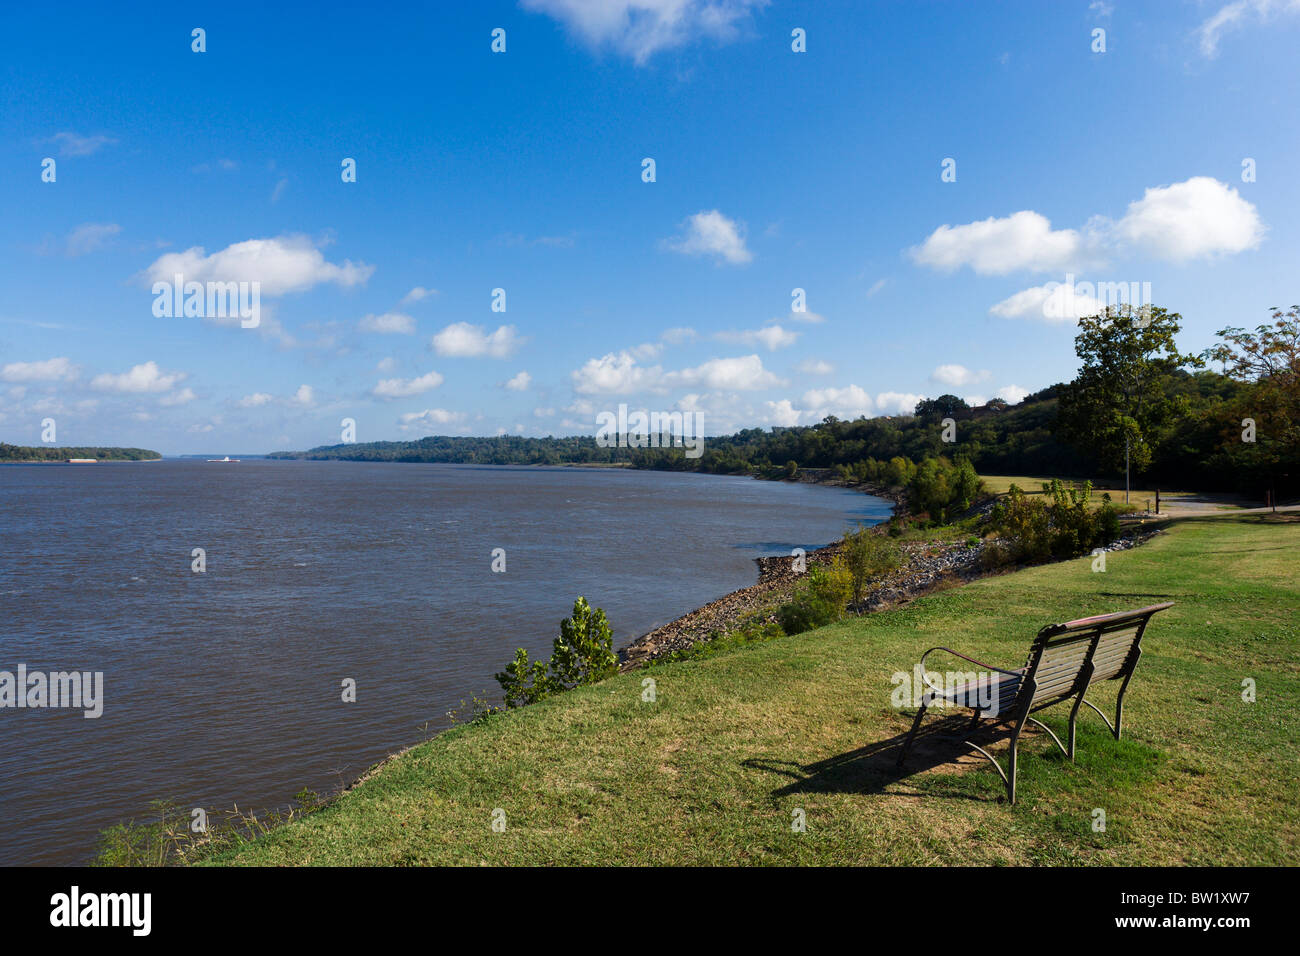 The Mississippi riverfront, Natchez-under-the-Hill, Natchez, Mississippi, USA Stock Photo